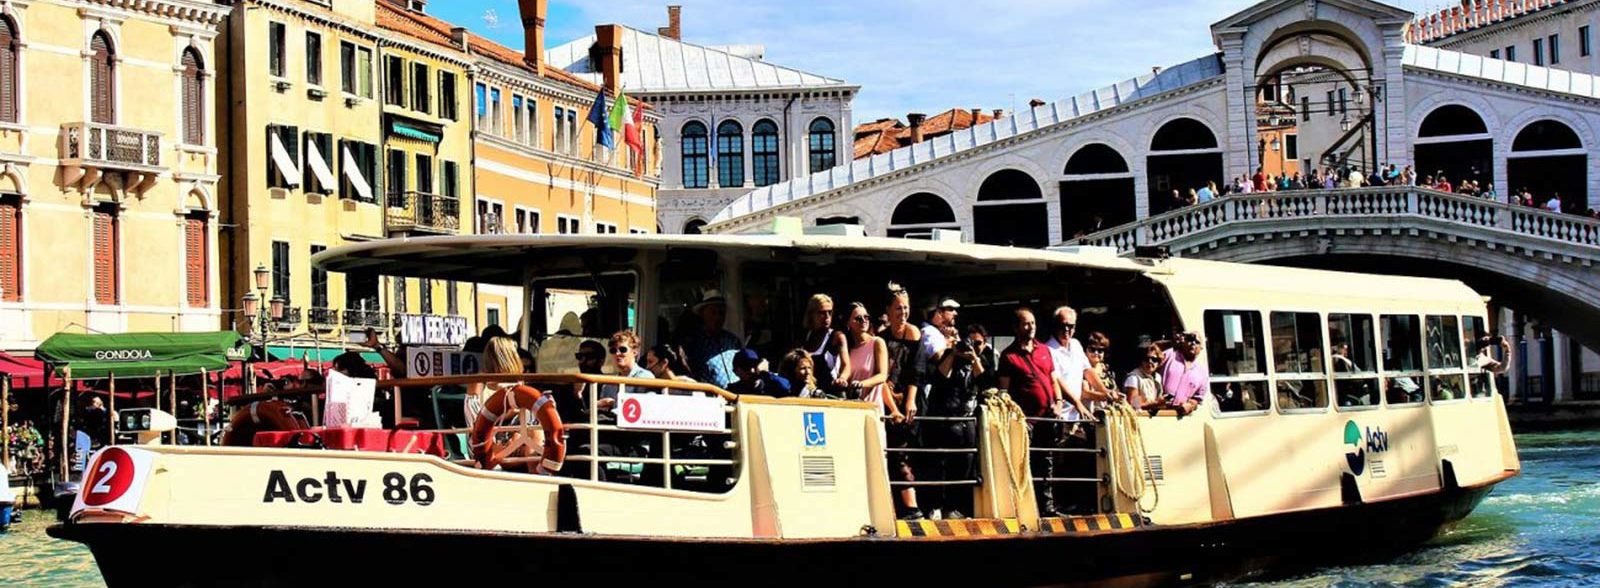 I trasporti pubblici a Venezia: tutte le informazioni utili